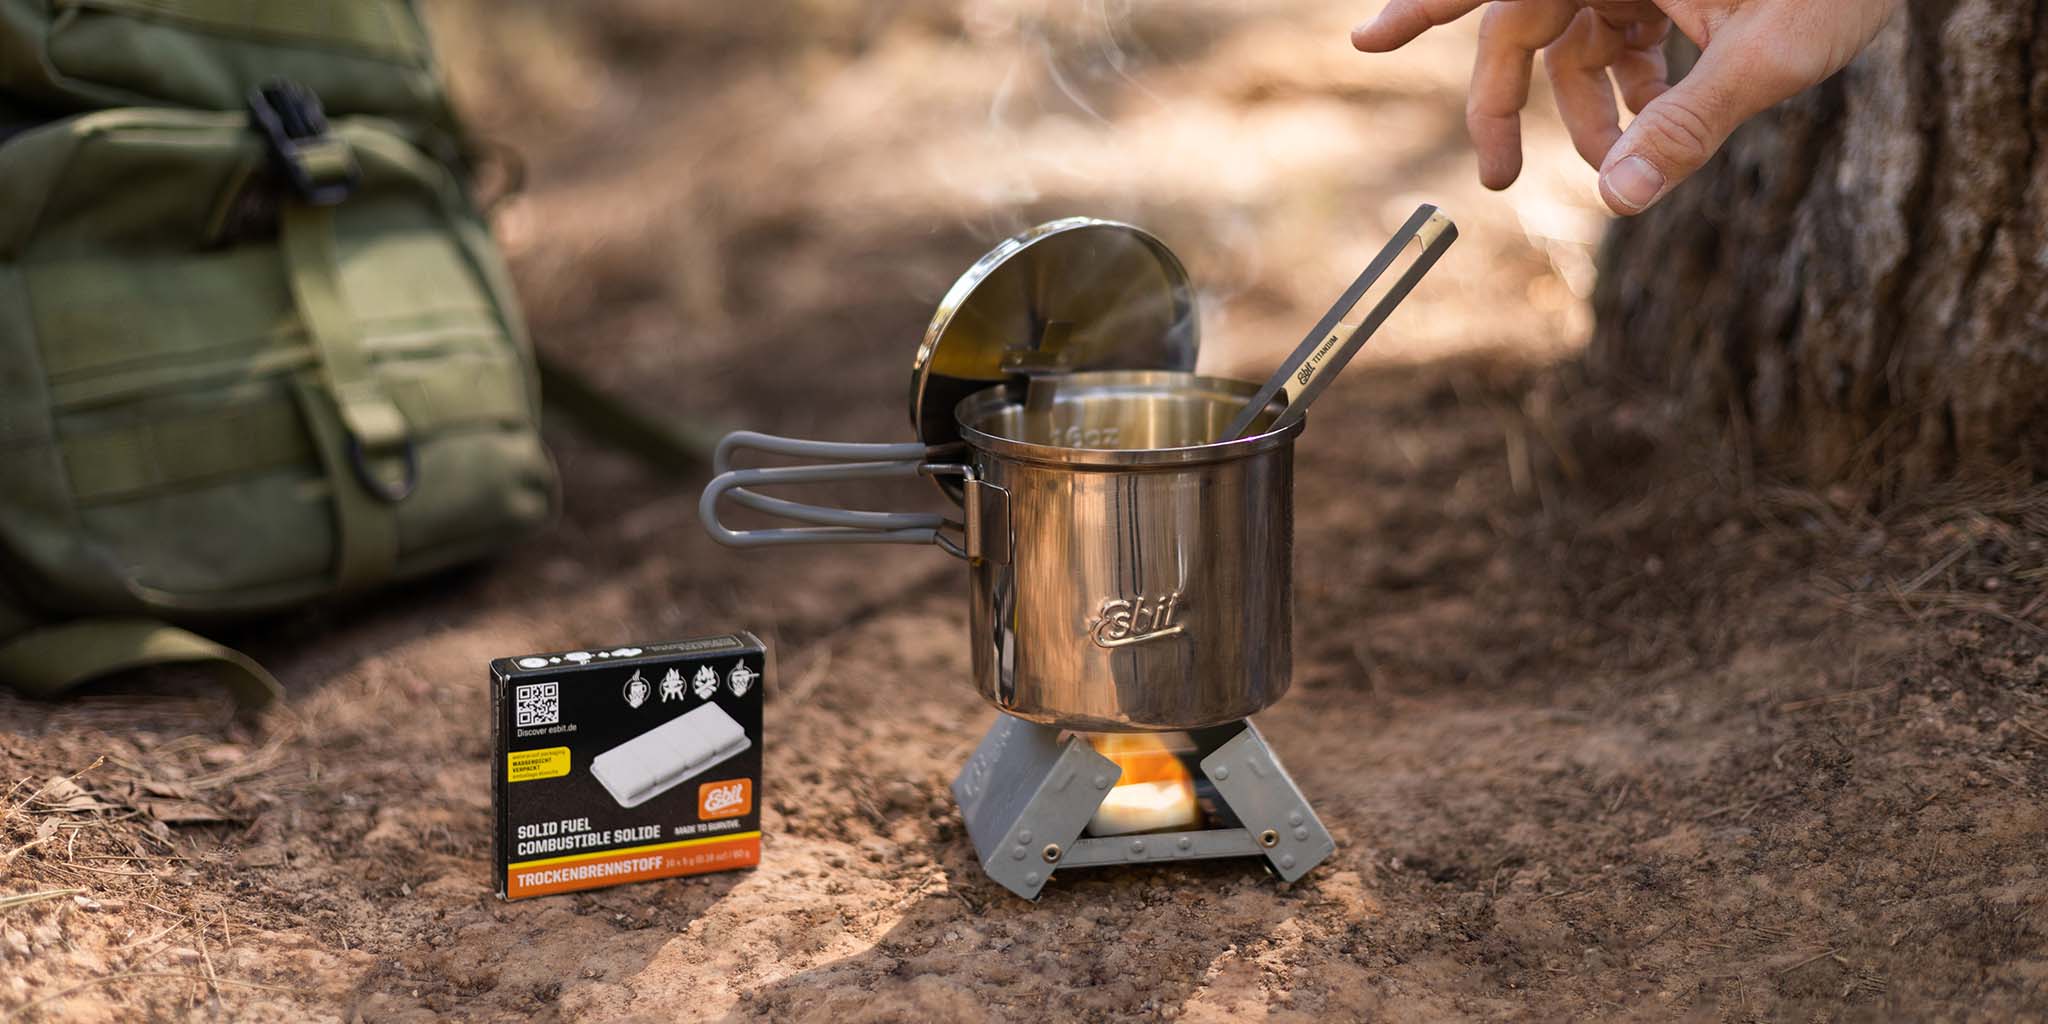 Edelstahl Camping Topf steht auf dem kleinen Taschenkocher, in dem eine Trockenbrennstoff-Tablette brennt